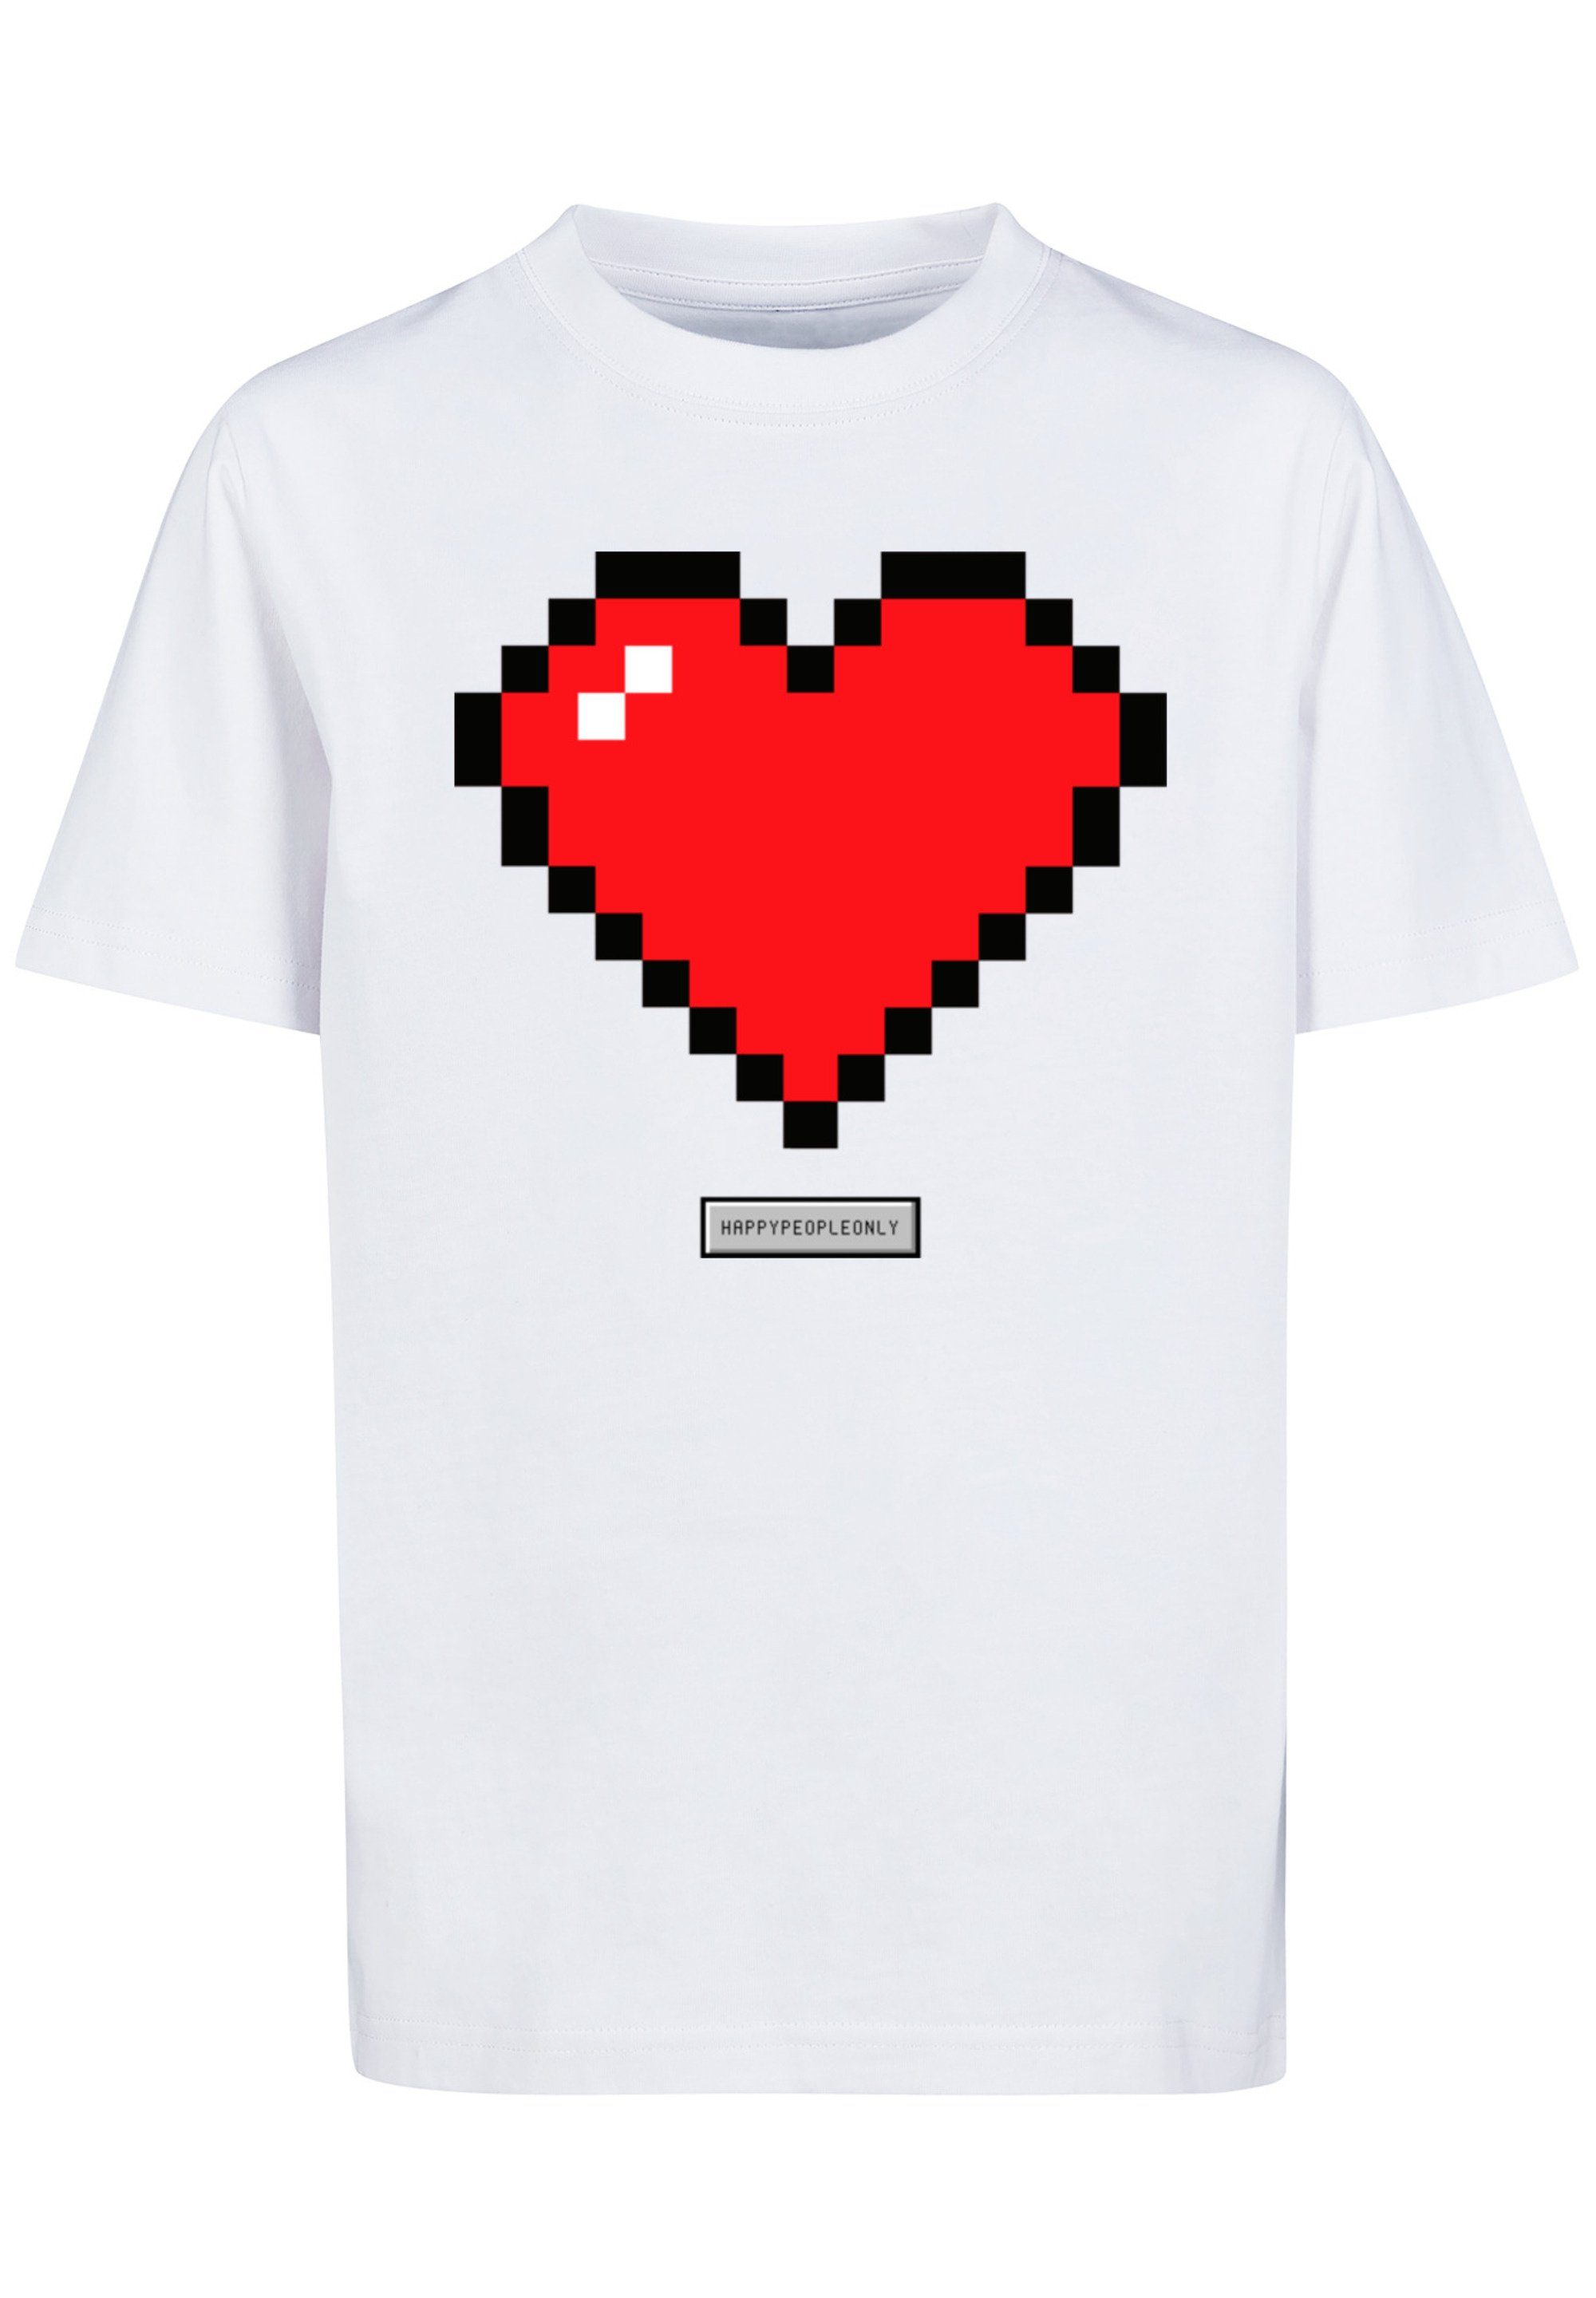 F4NT4STIC T-Shirt People Happy Vibes trägt Größe cm groß Das Good 145/152 Pixel Model ist 145 und Herz Print